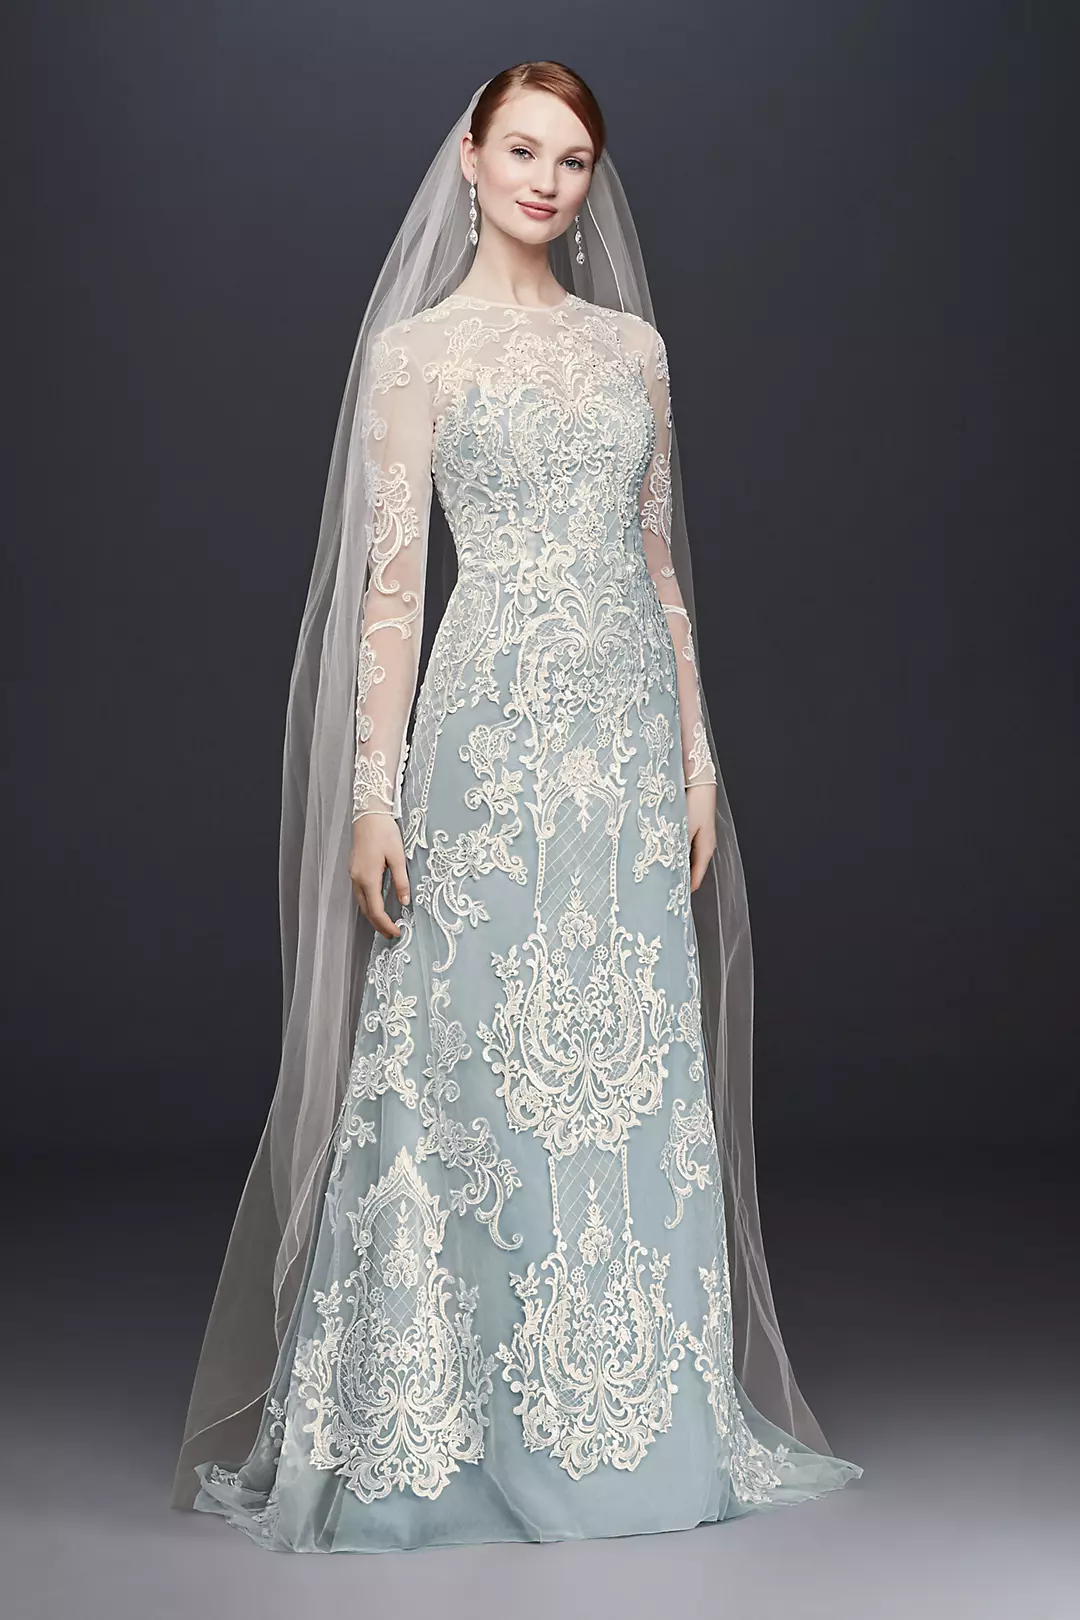 Illusion Lace Long-Sleeve Sheath Wedding Dress Image